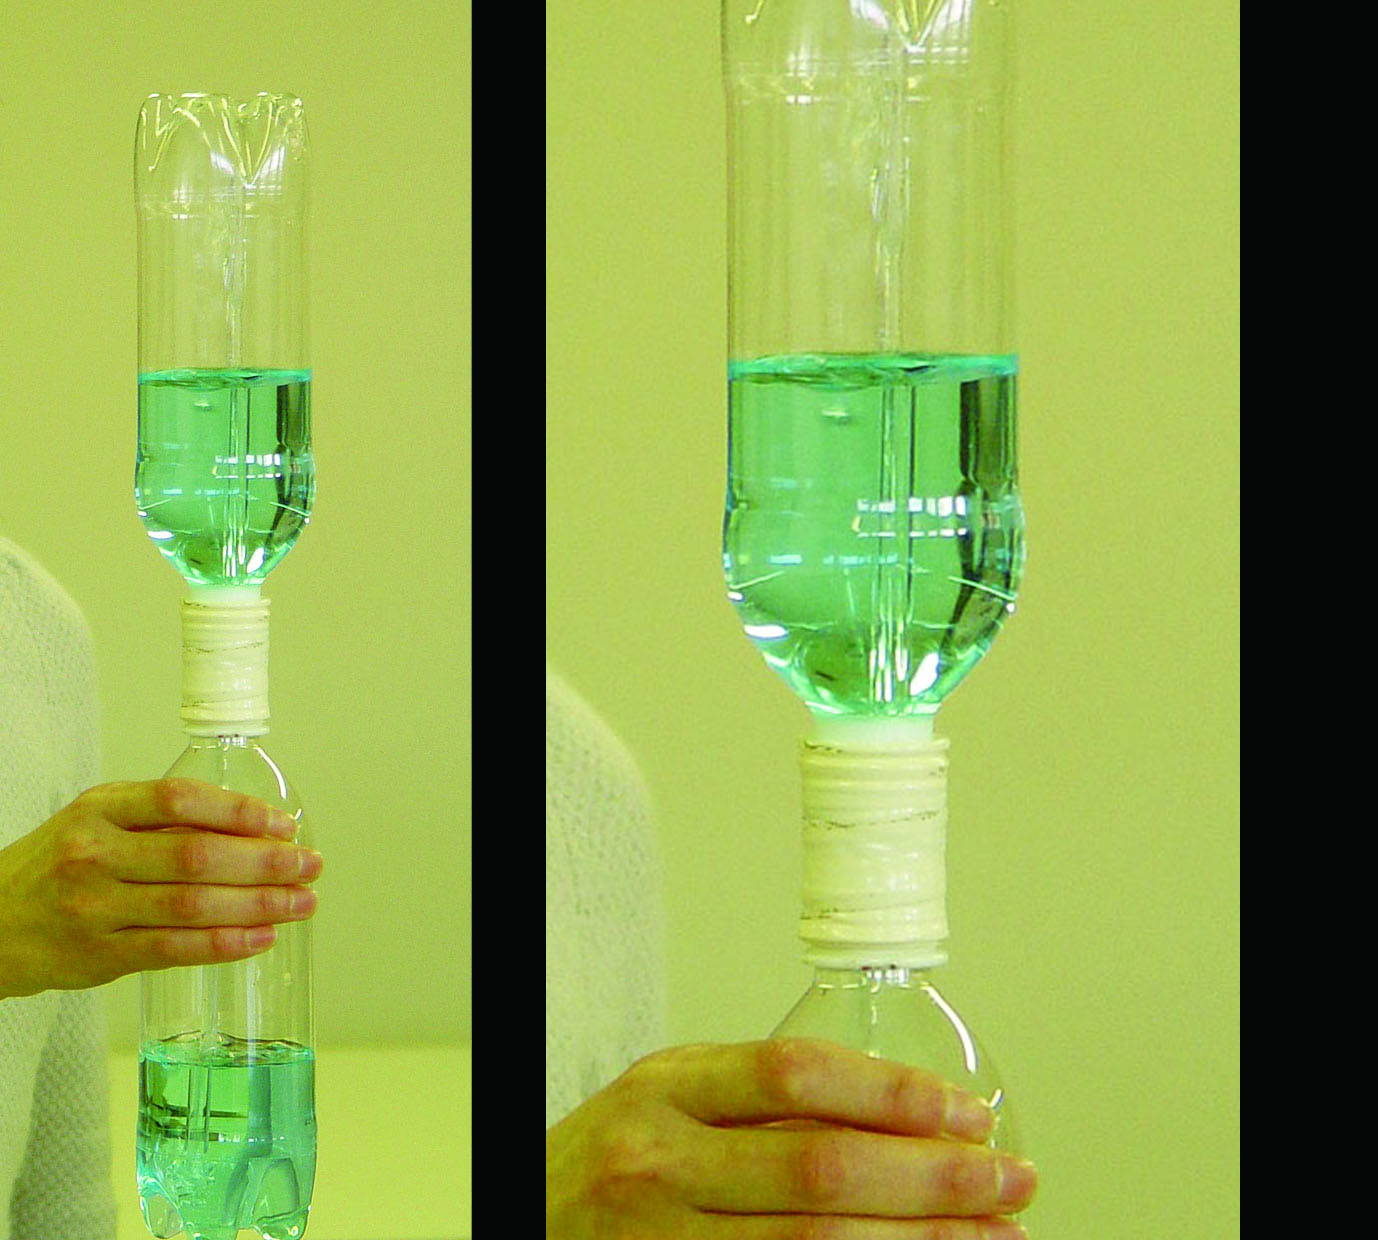 ふしぎサイエンス実験②空気や水が押す力イメージ画像